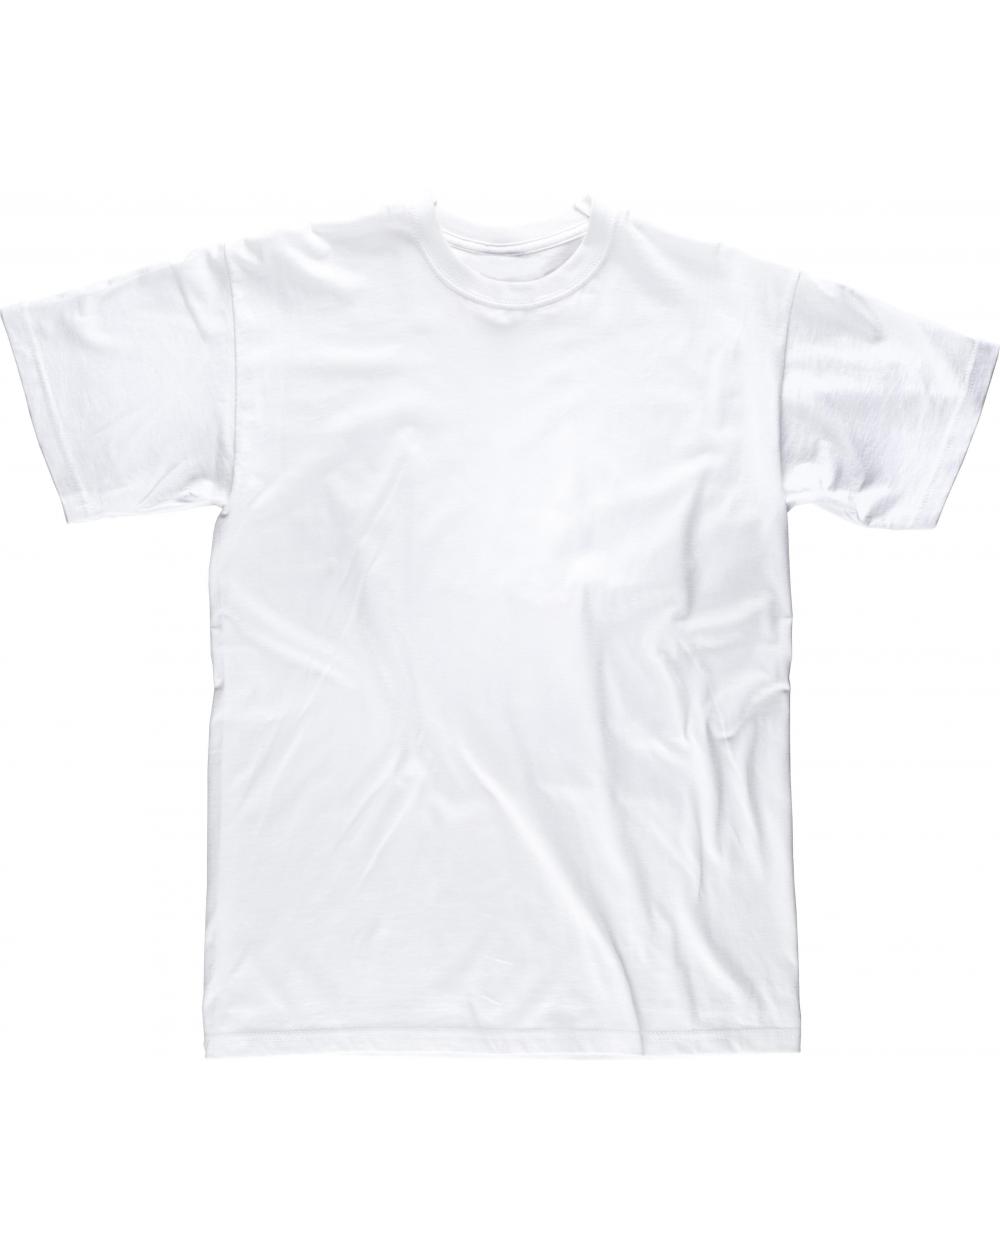 Comprar Camiseta blanca de algodon S6601 Blanco workteam delante